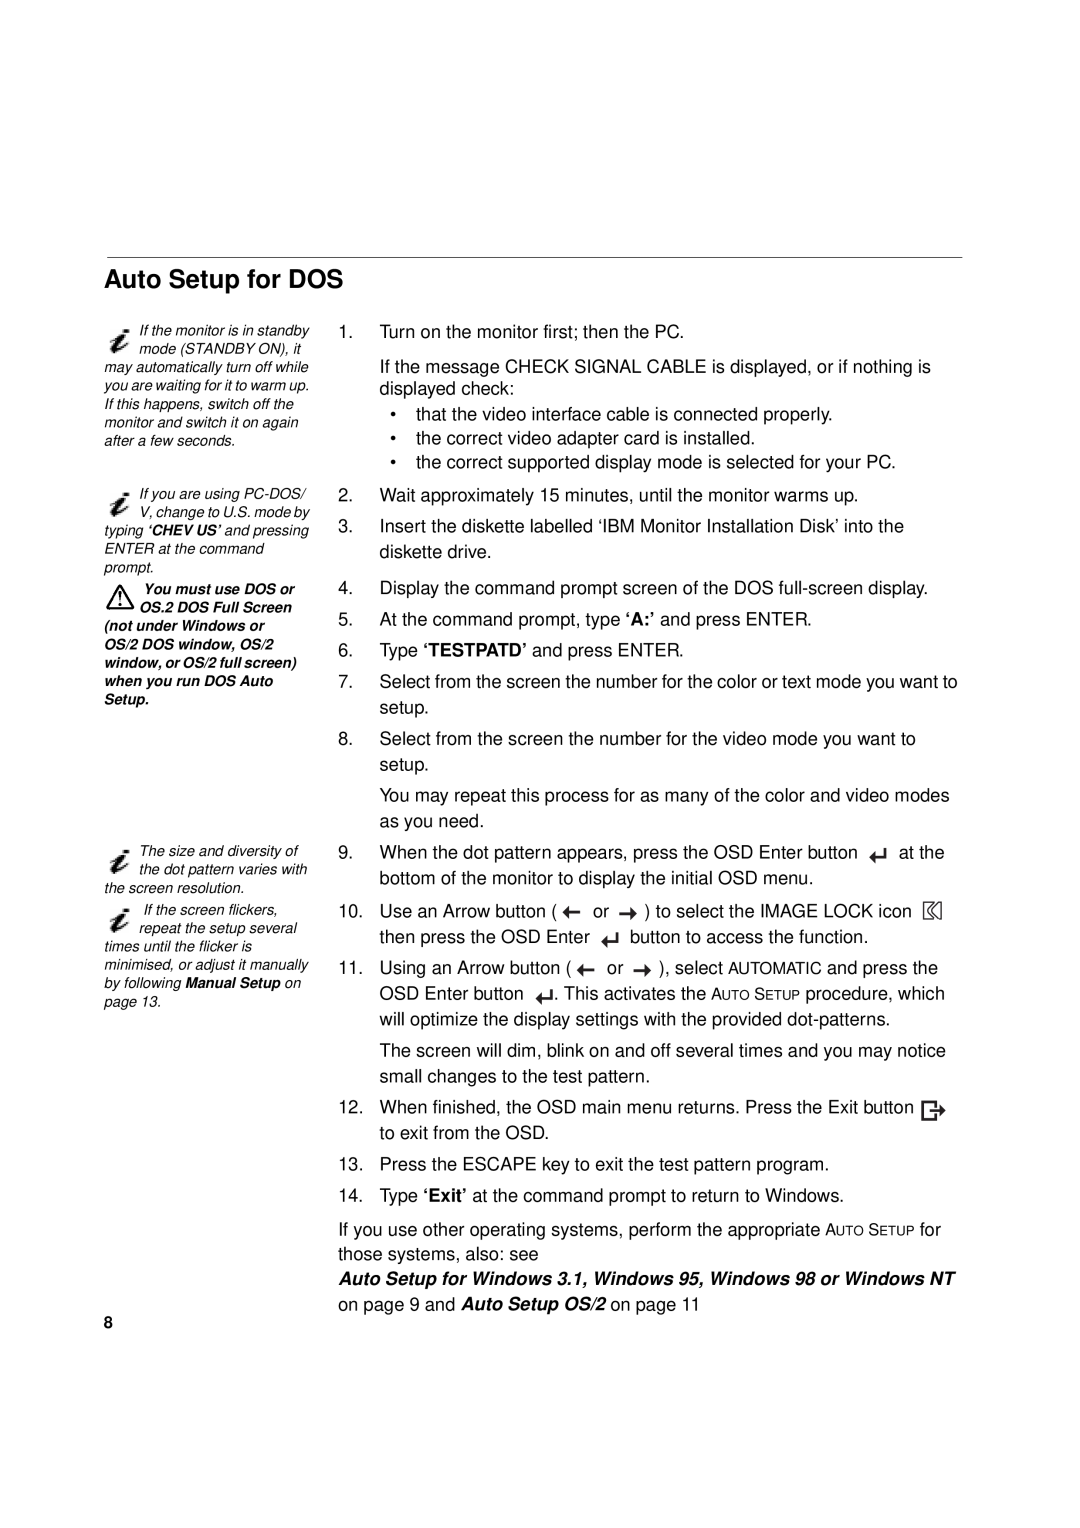 IBM T 55A manual Auto Setup for DOS, Auto Setup for Windows 3.1, Windows 95, Windows 98 or Windows NT 